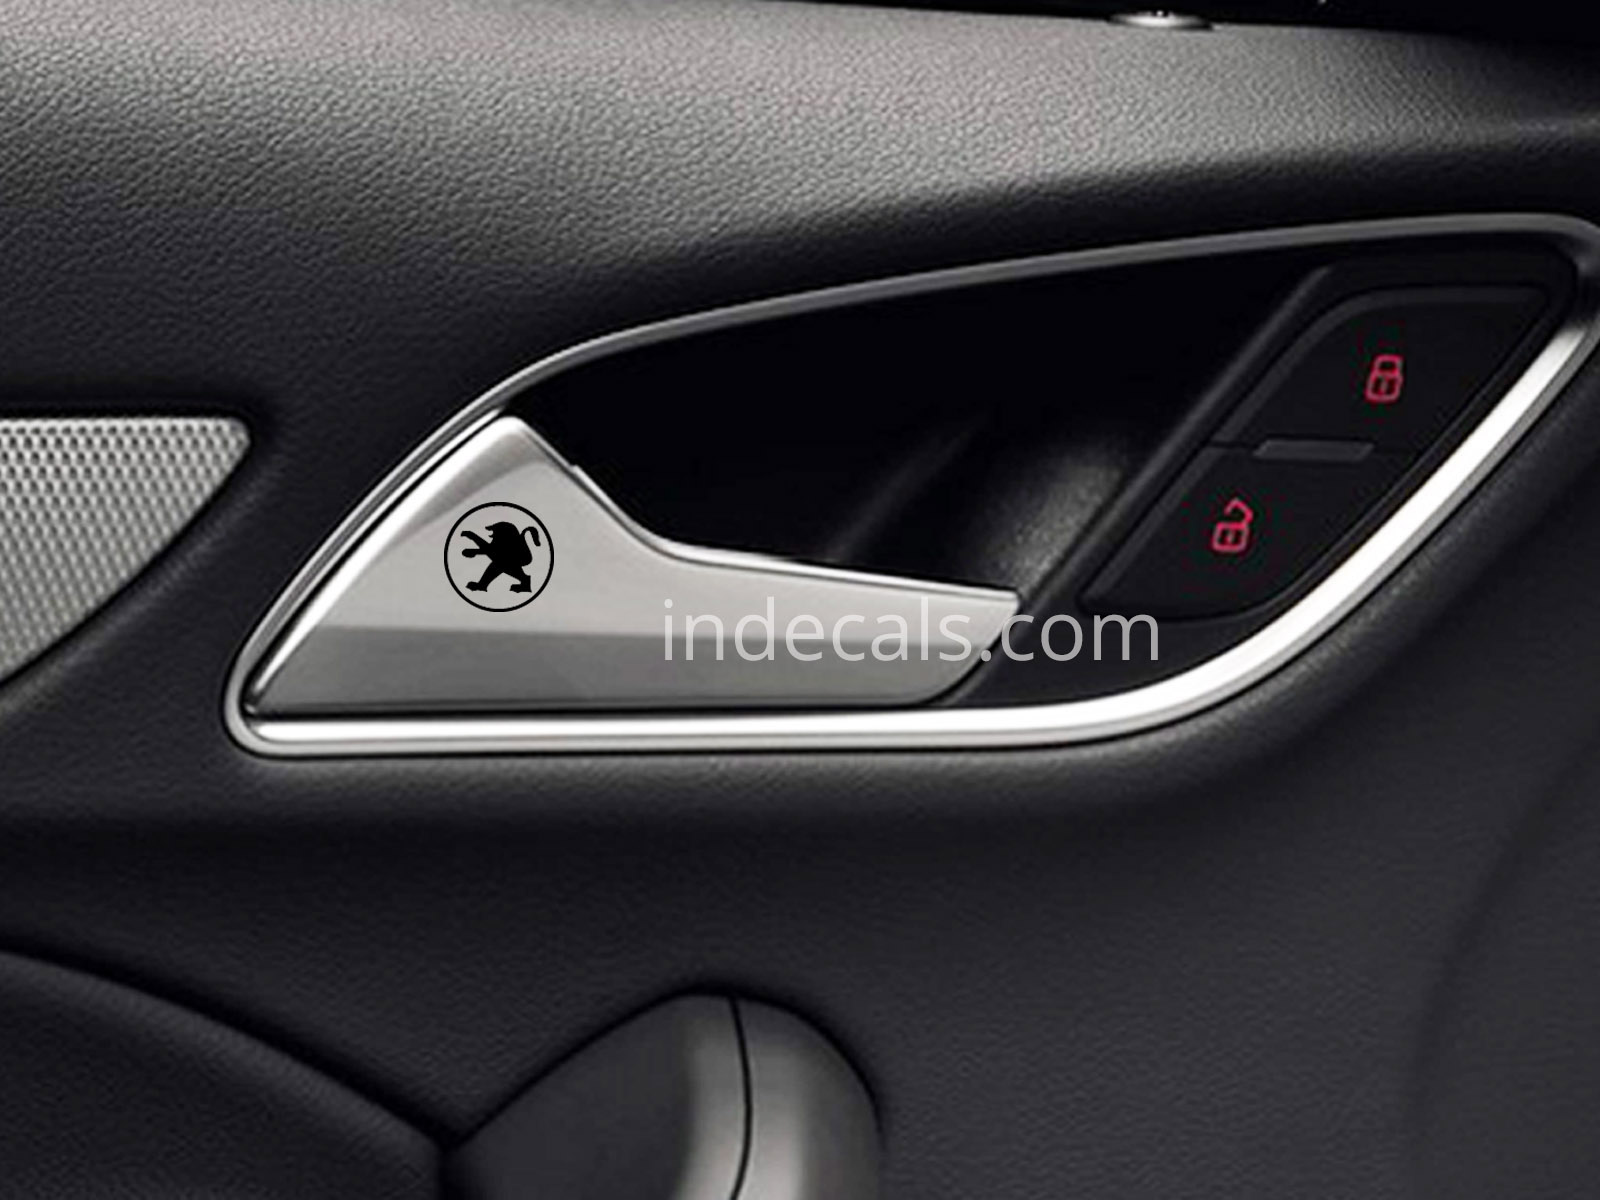 6 x Peugeot Stickers for Door Handle - Black